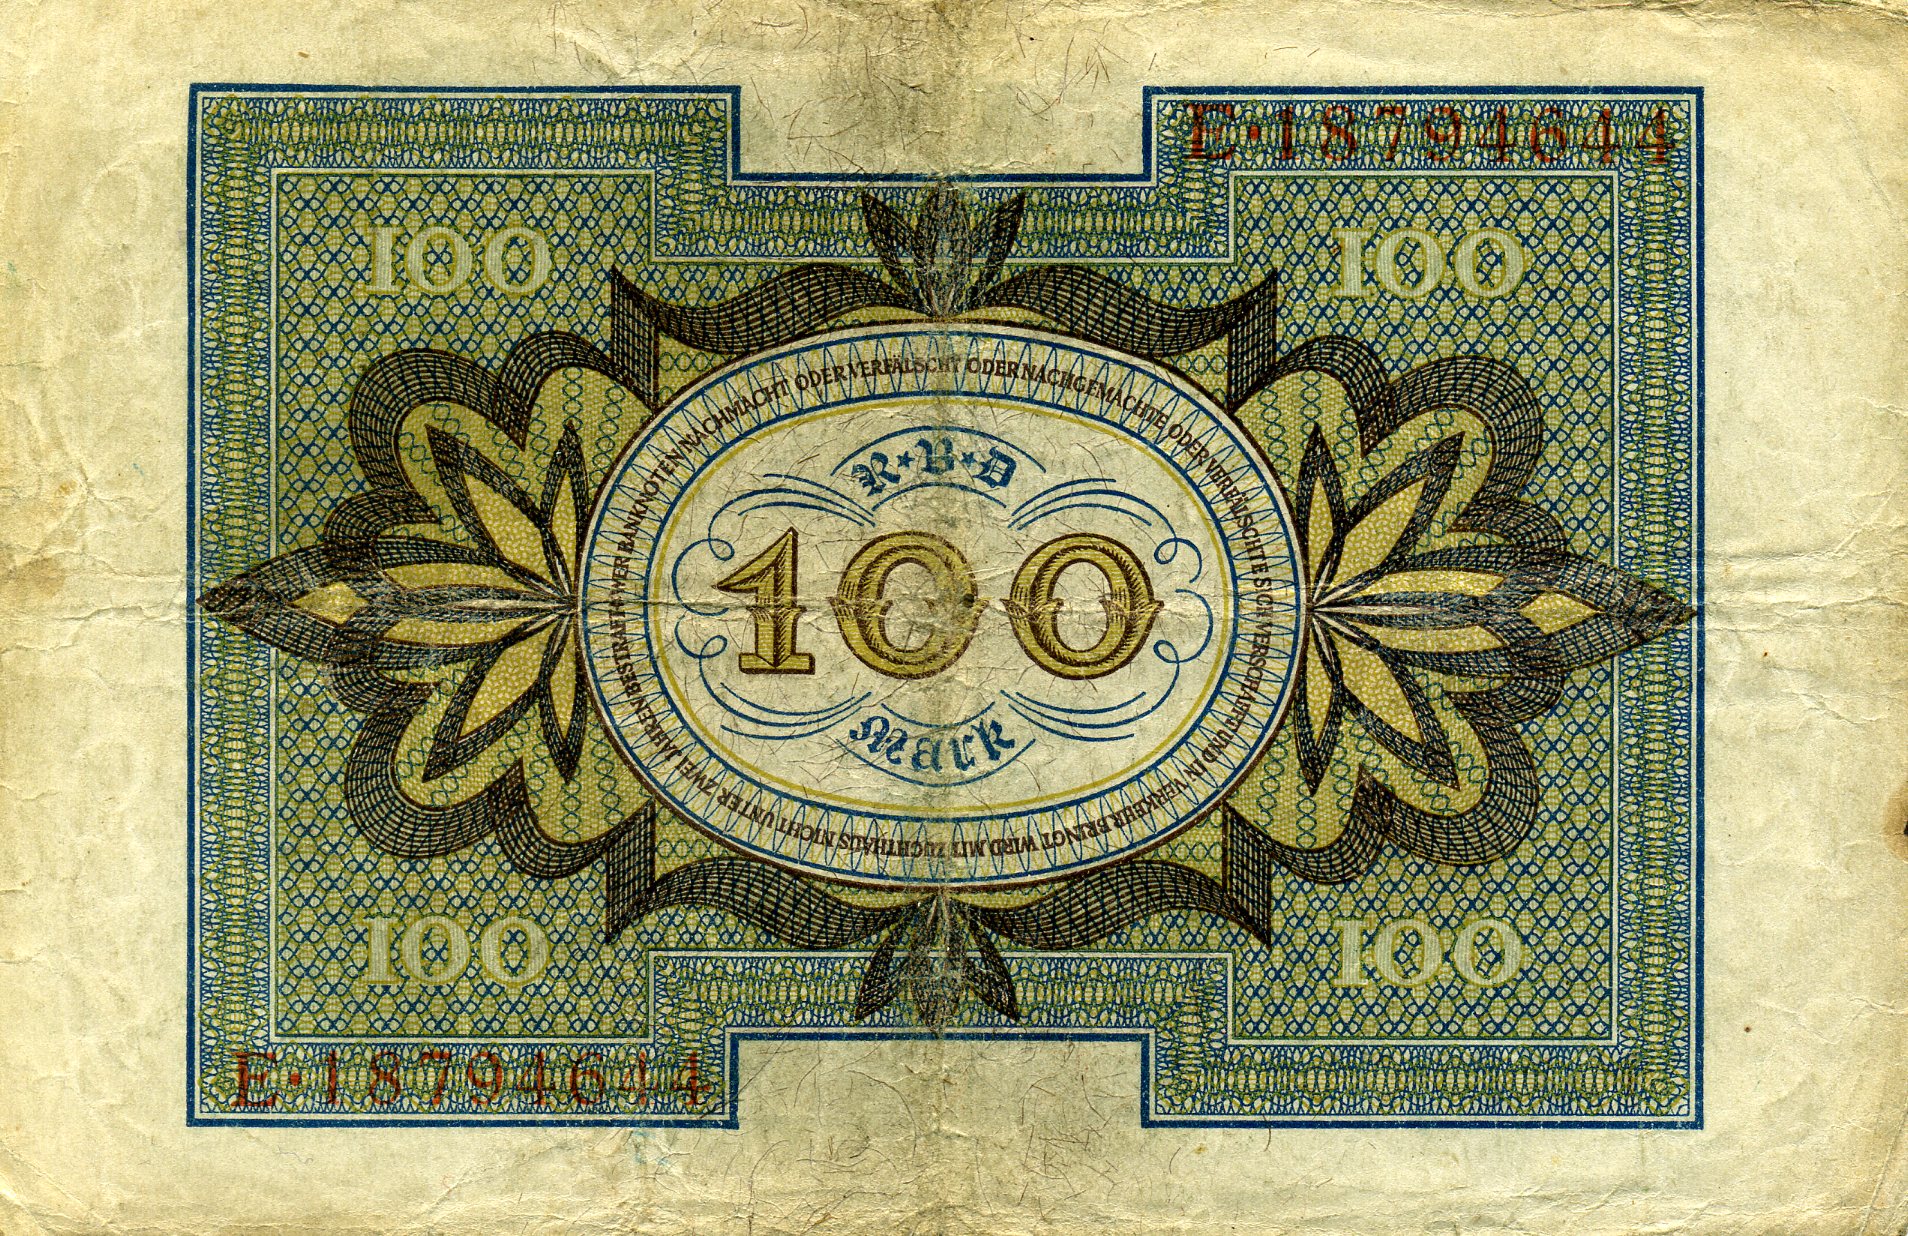 100 марок 1 ноября 1920 года. Реверс. Реферат Рефератович.